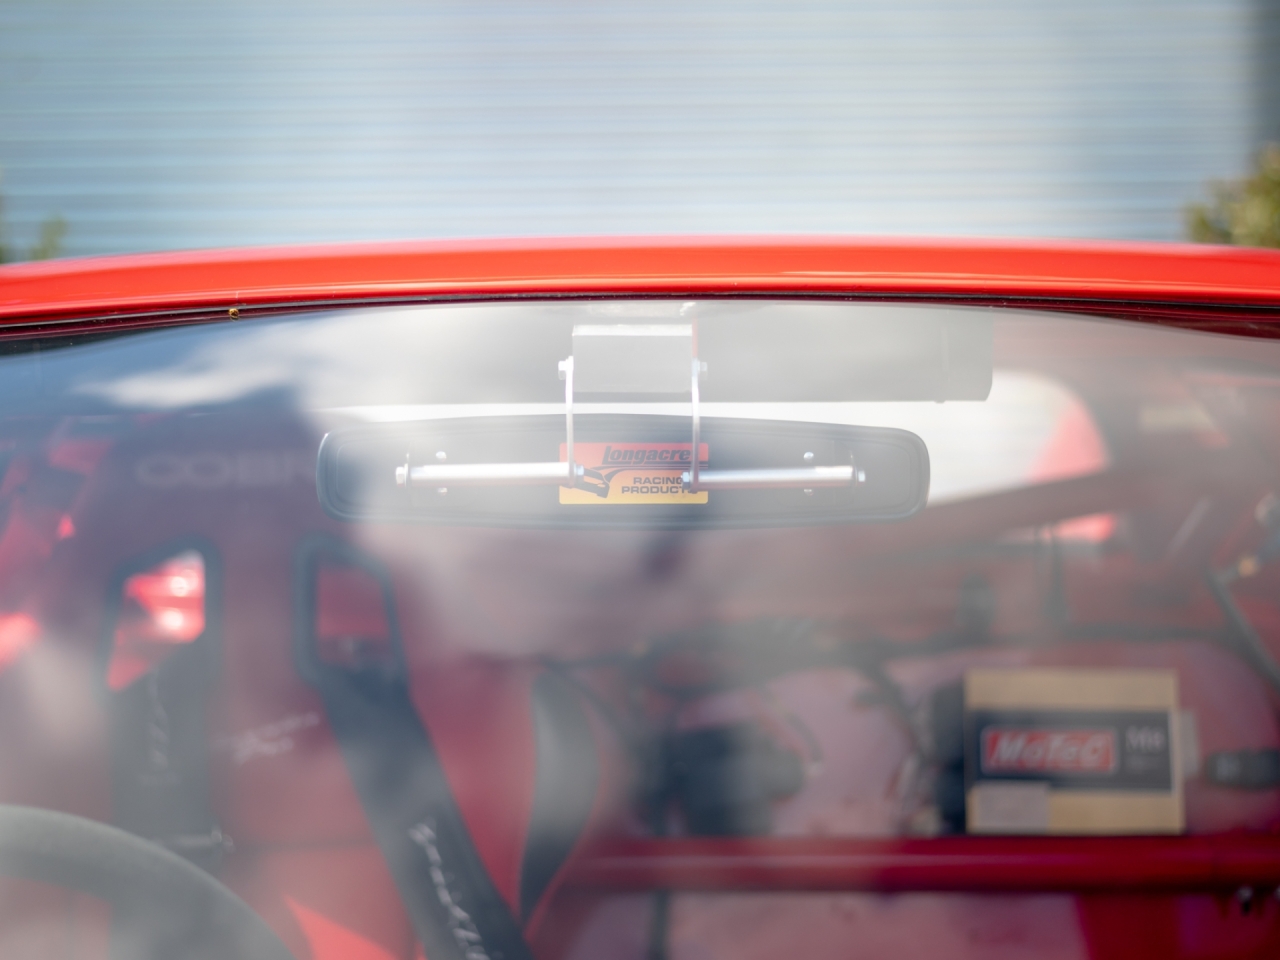 Ferrari Testarossa Race Car